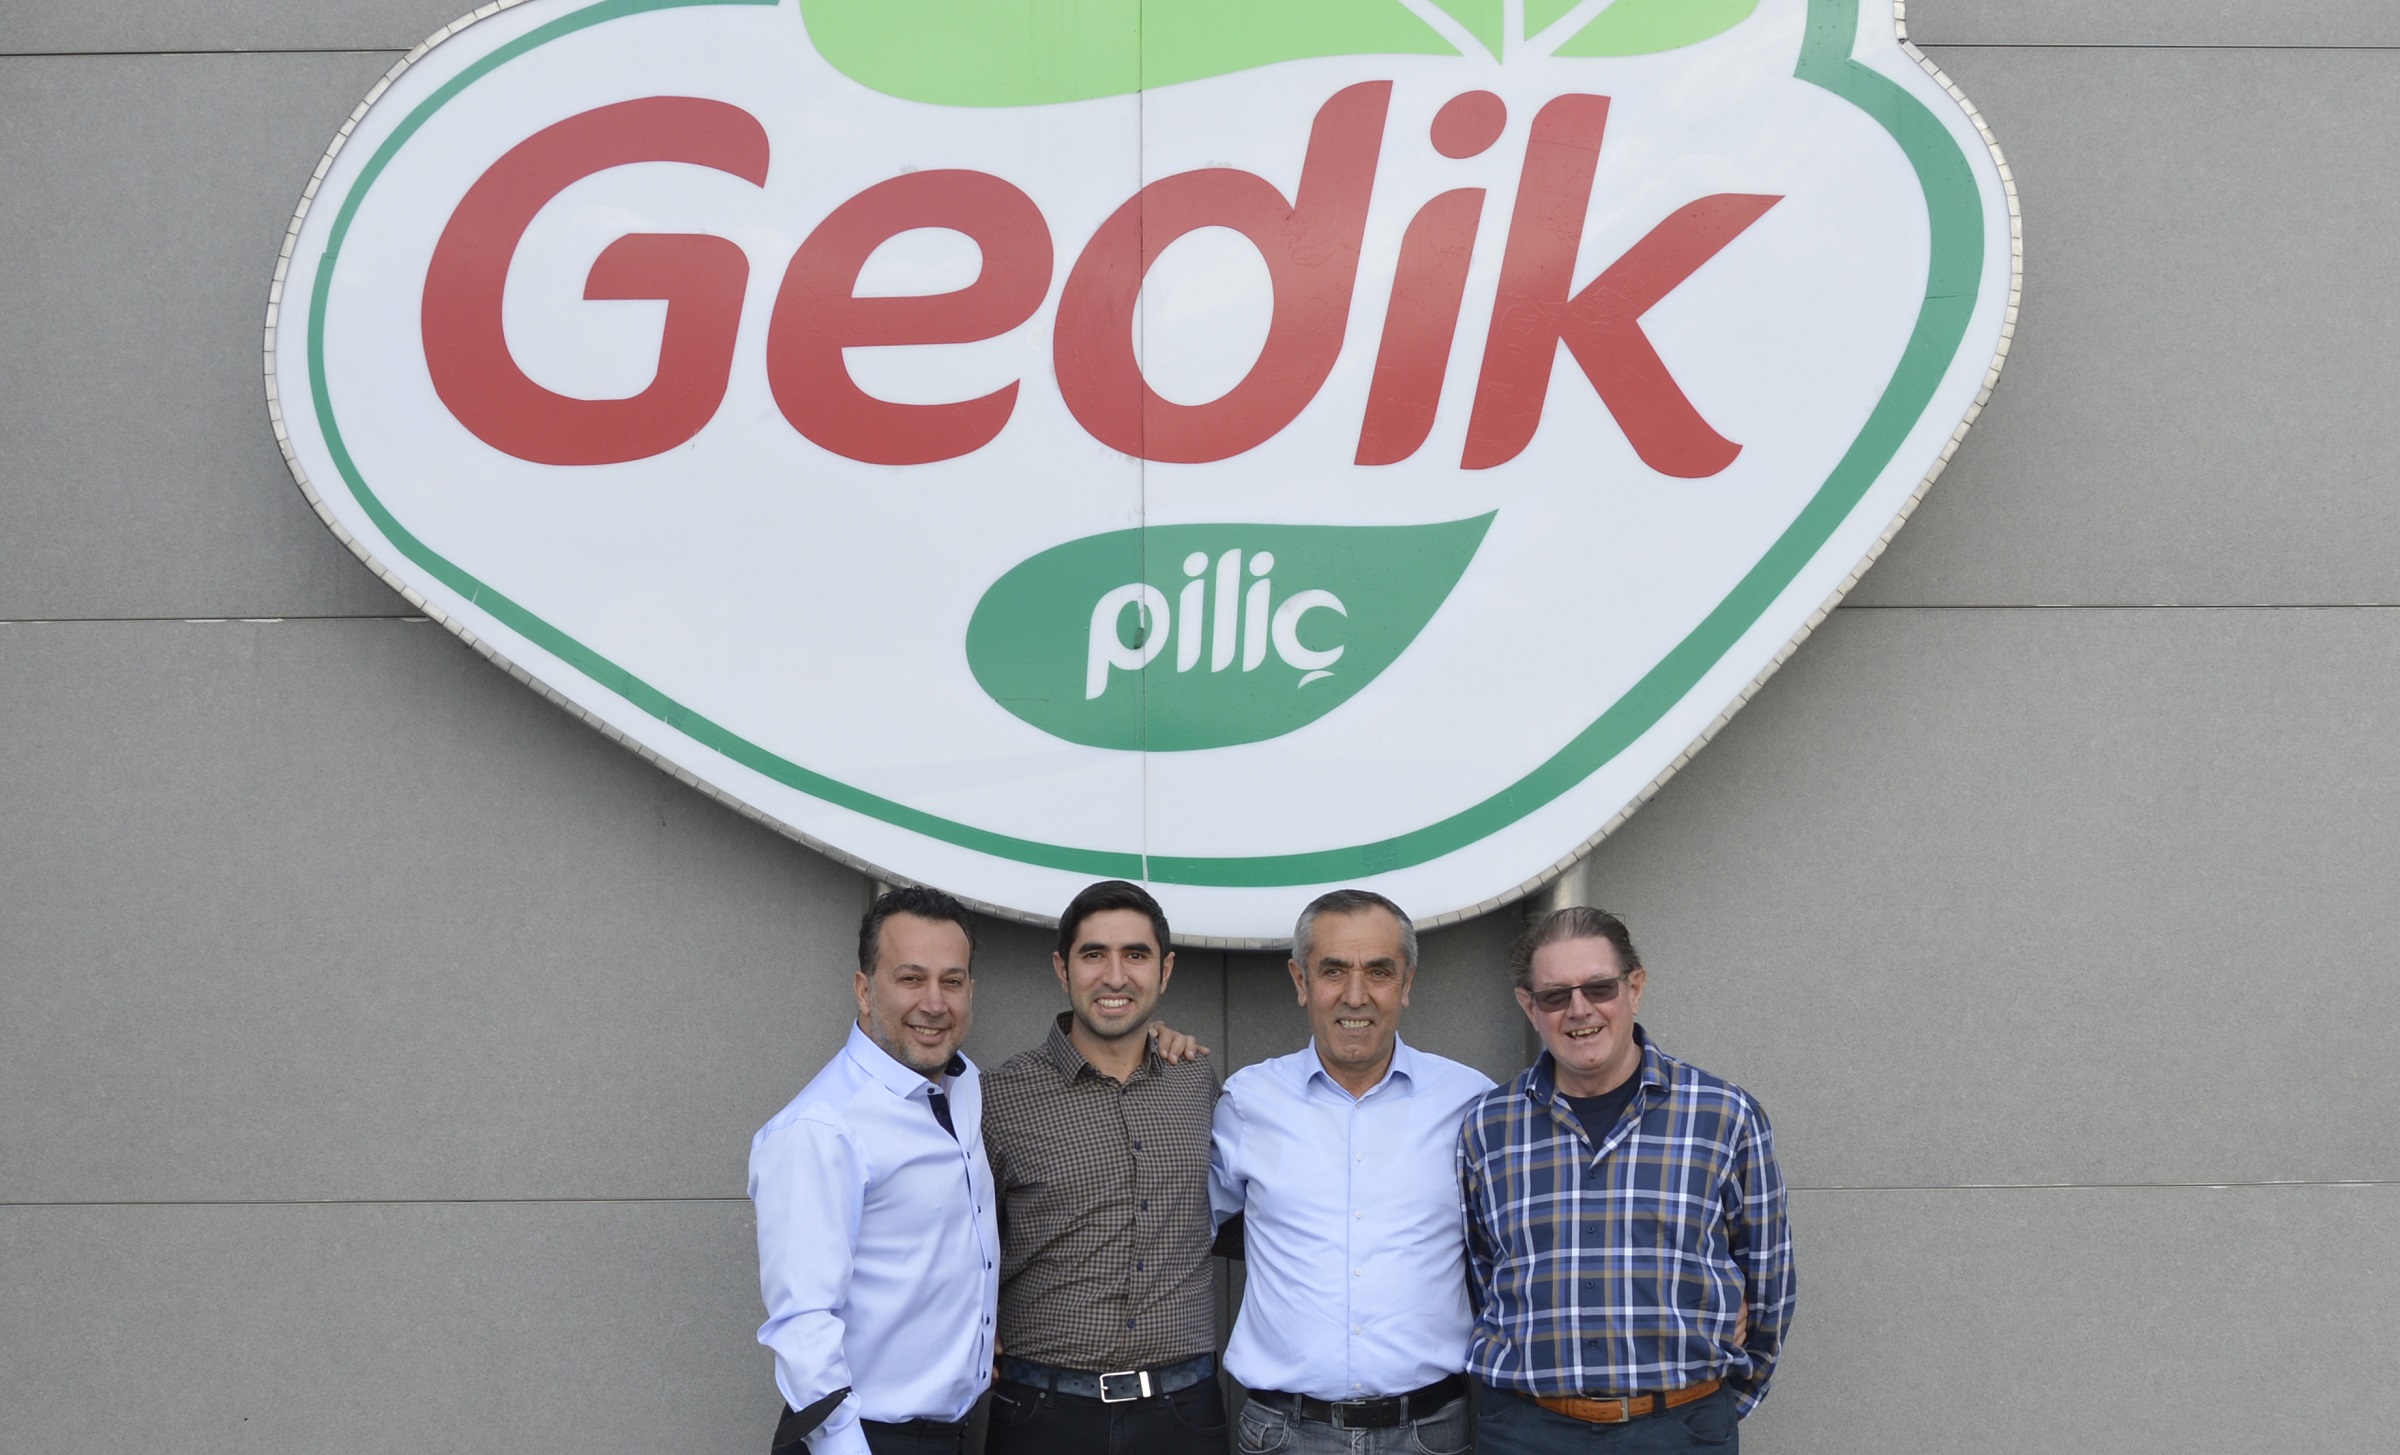 Gedik et Abalioglu servent toutes deux de grandes chaînes de restauration rapide